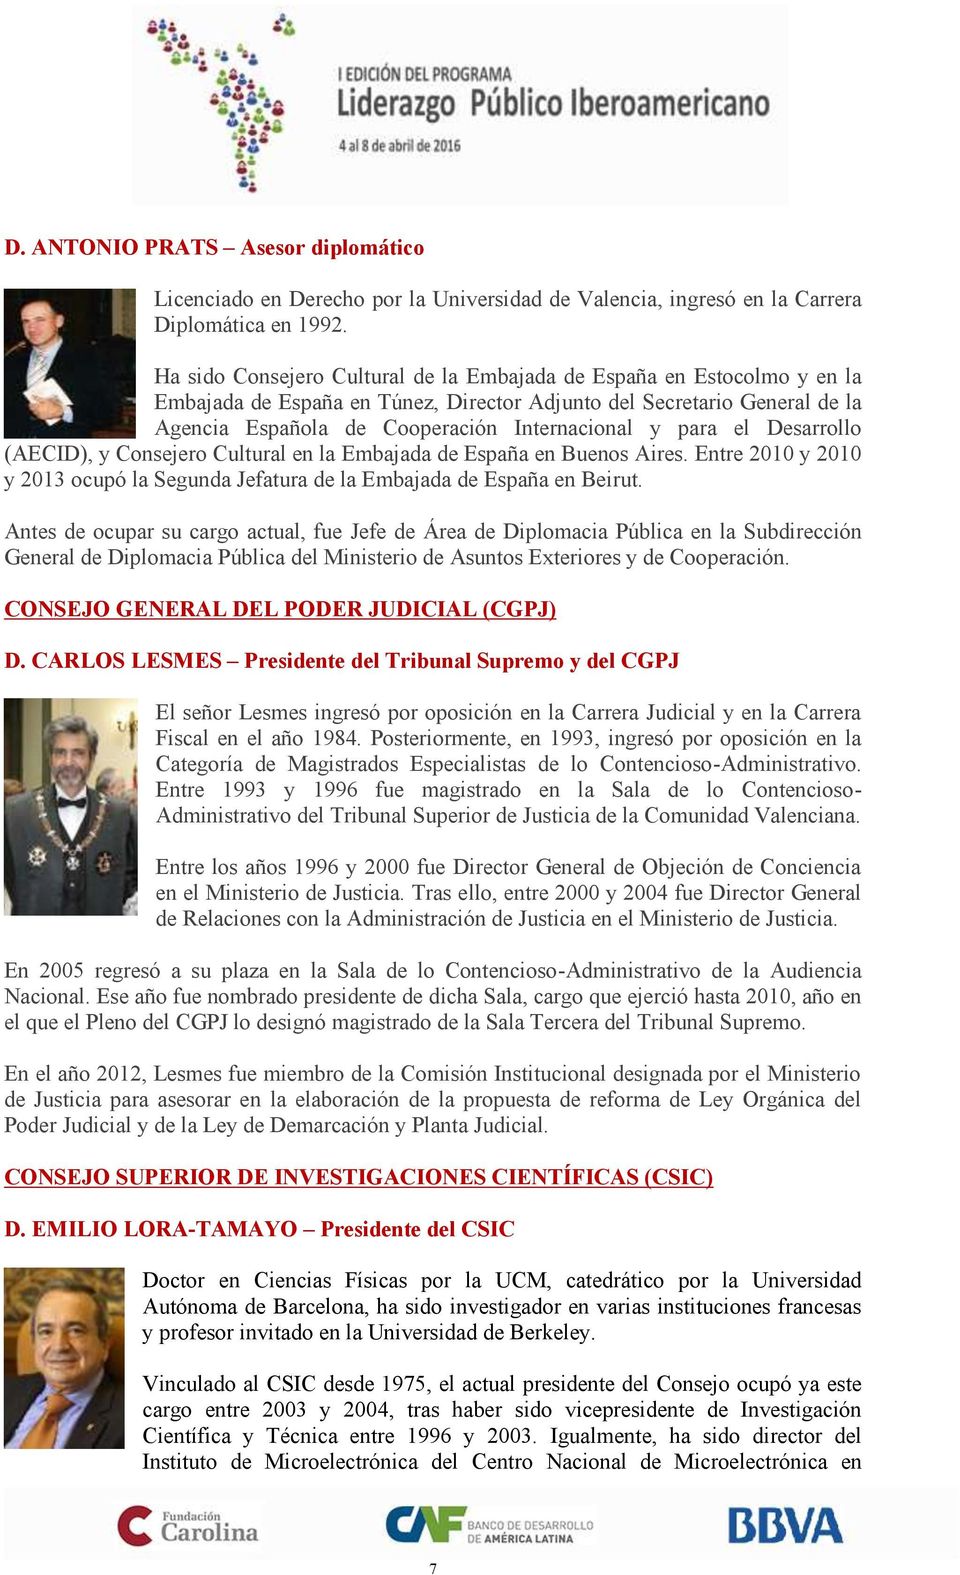 para el Desarrollo (AECID), y Consejero Cultural en la Embajada de España en Buenos Aires. Entre 2010 y 2010 y 2013 ocupó la Segunda Jefatura de la Embajada de España en Beirut.